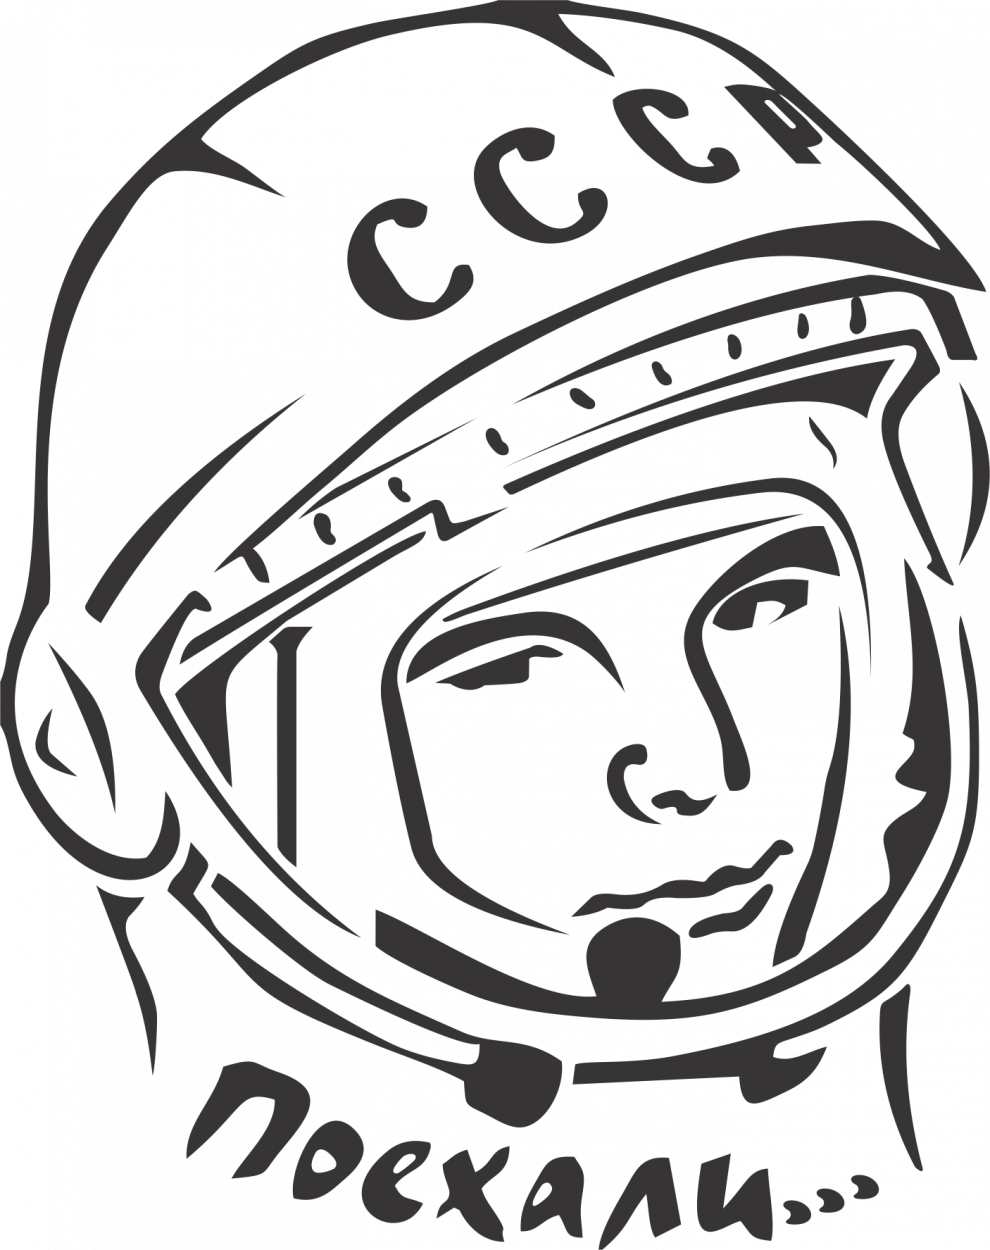 Шаблон шлема космонавта для фотосессии. Гагарин портрет. Портрет Юрия Гагарина карандашом.